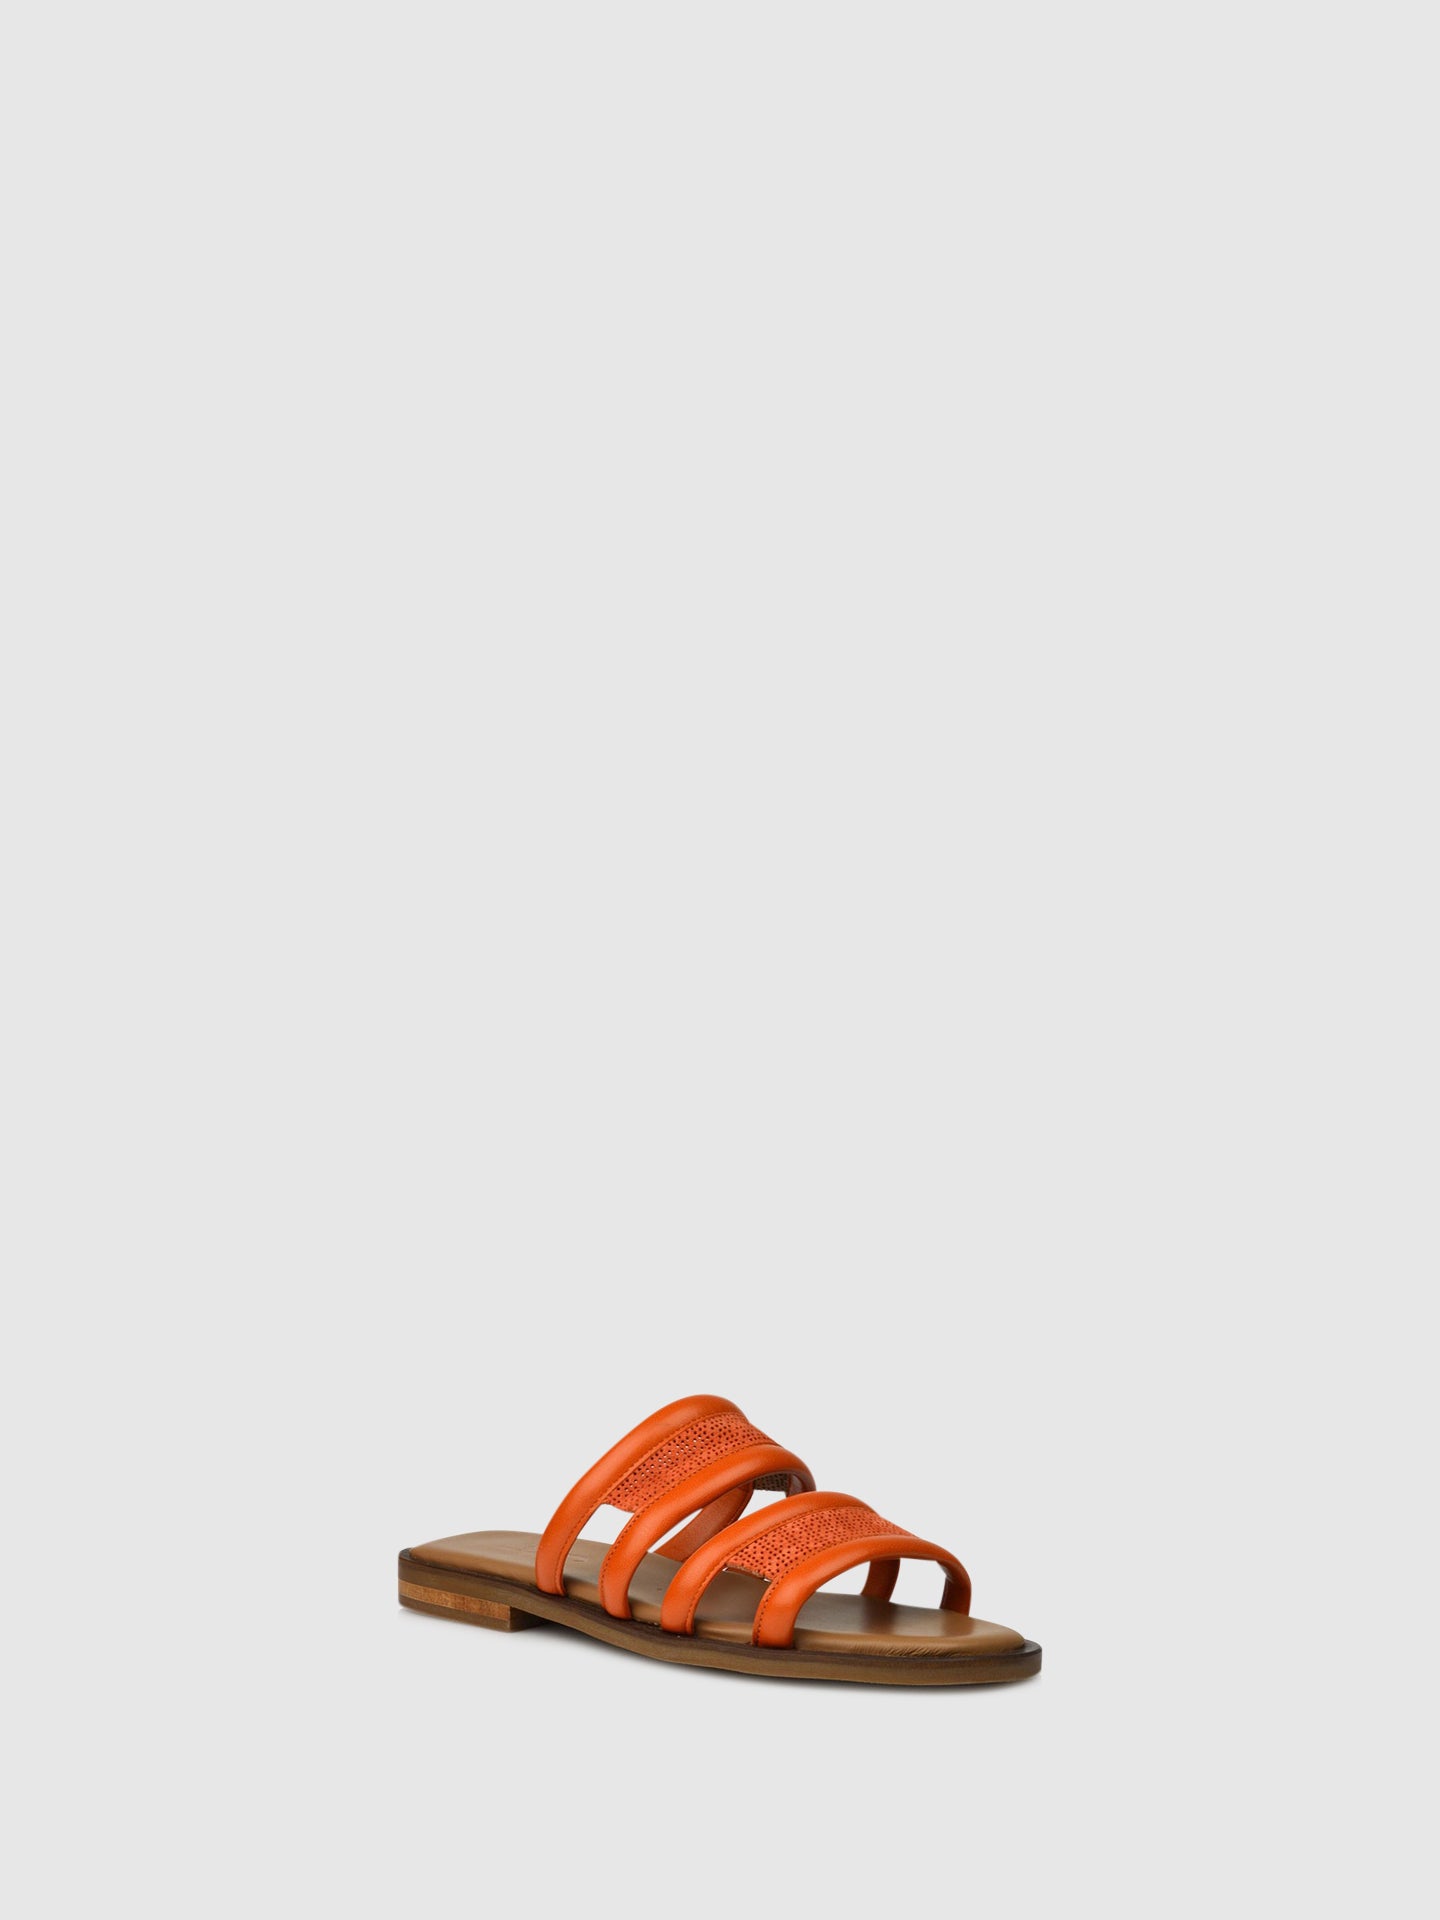 JJ Heitor Bow Sandals A06L1 Orange